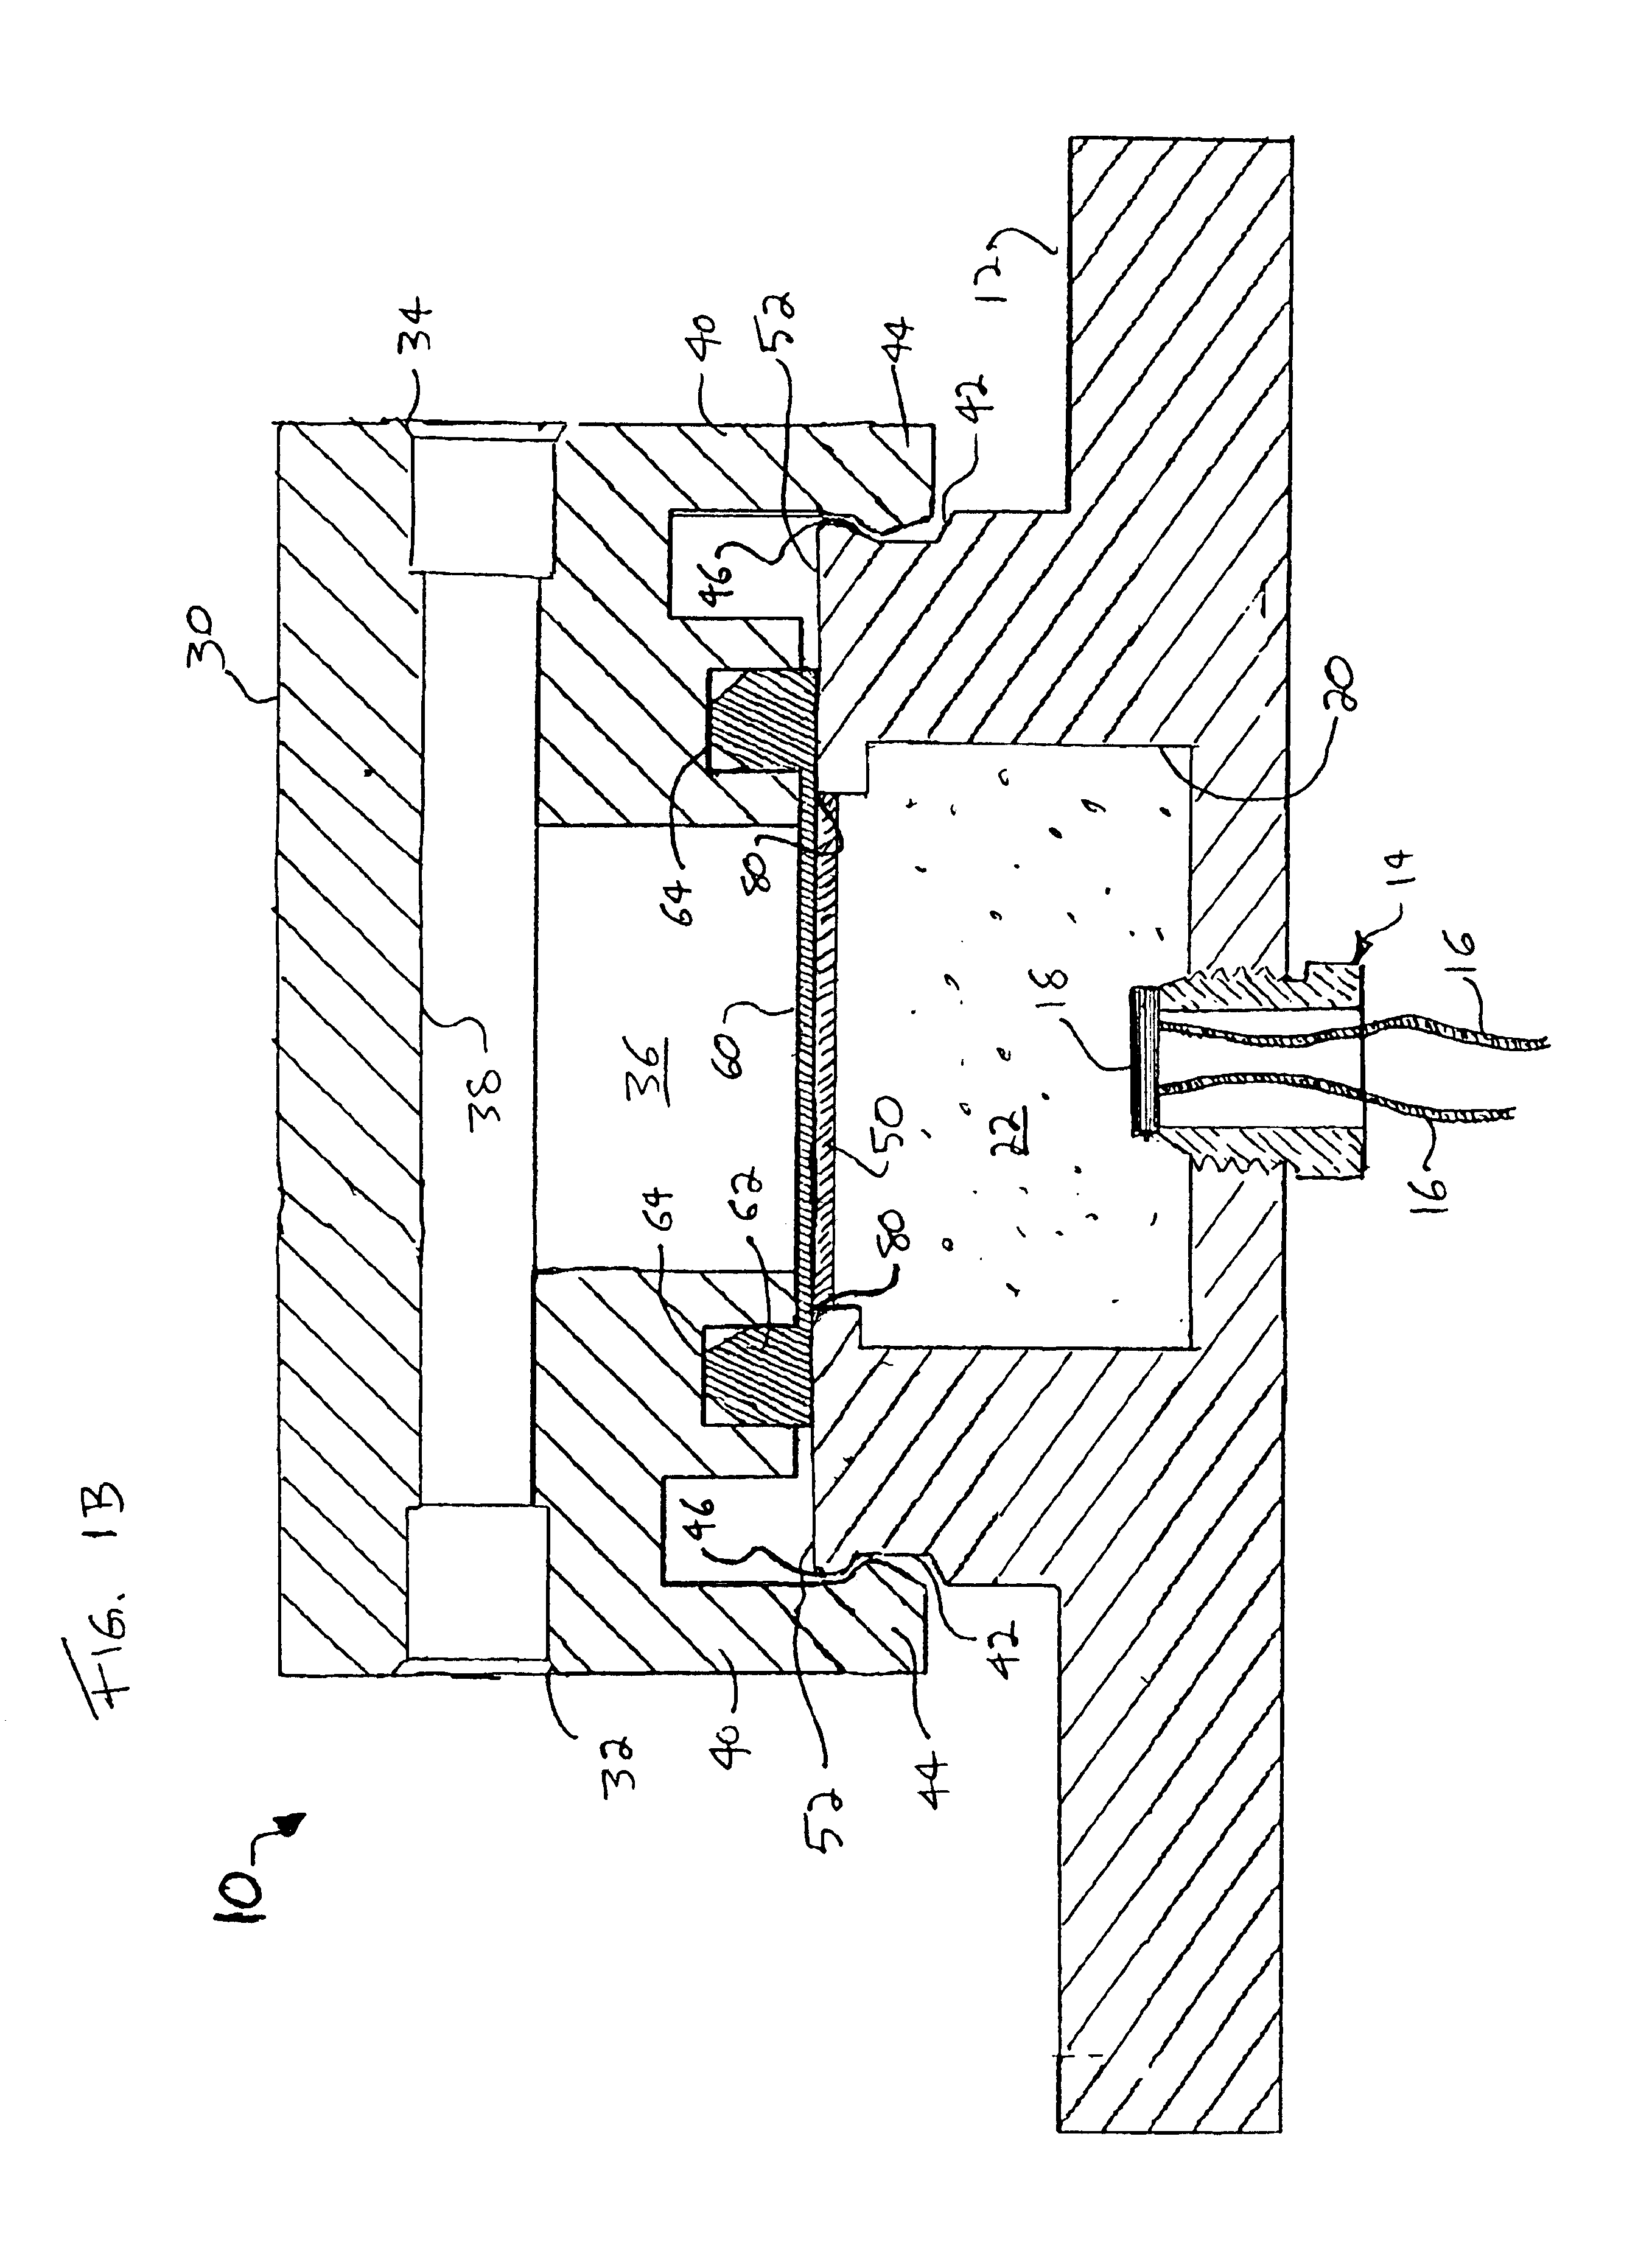 Apparatus and method for sealing pressure sensor membranes